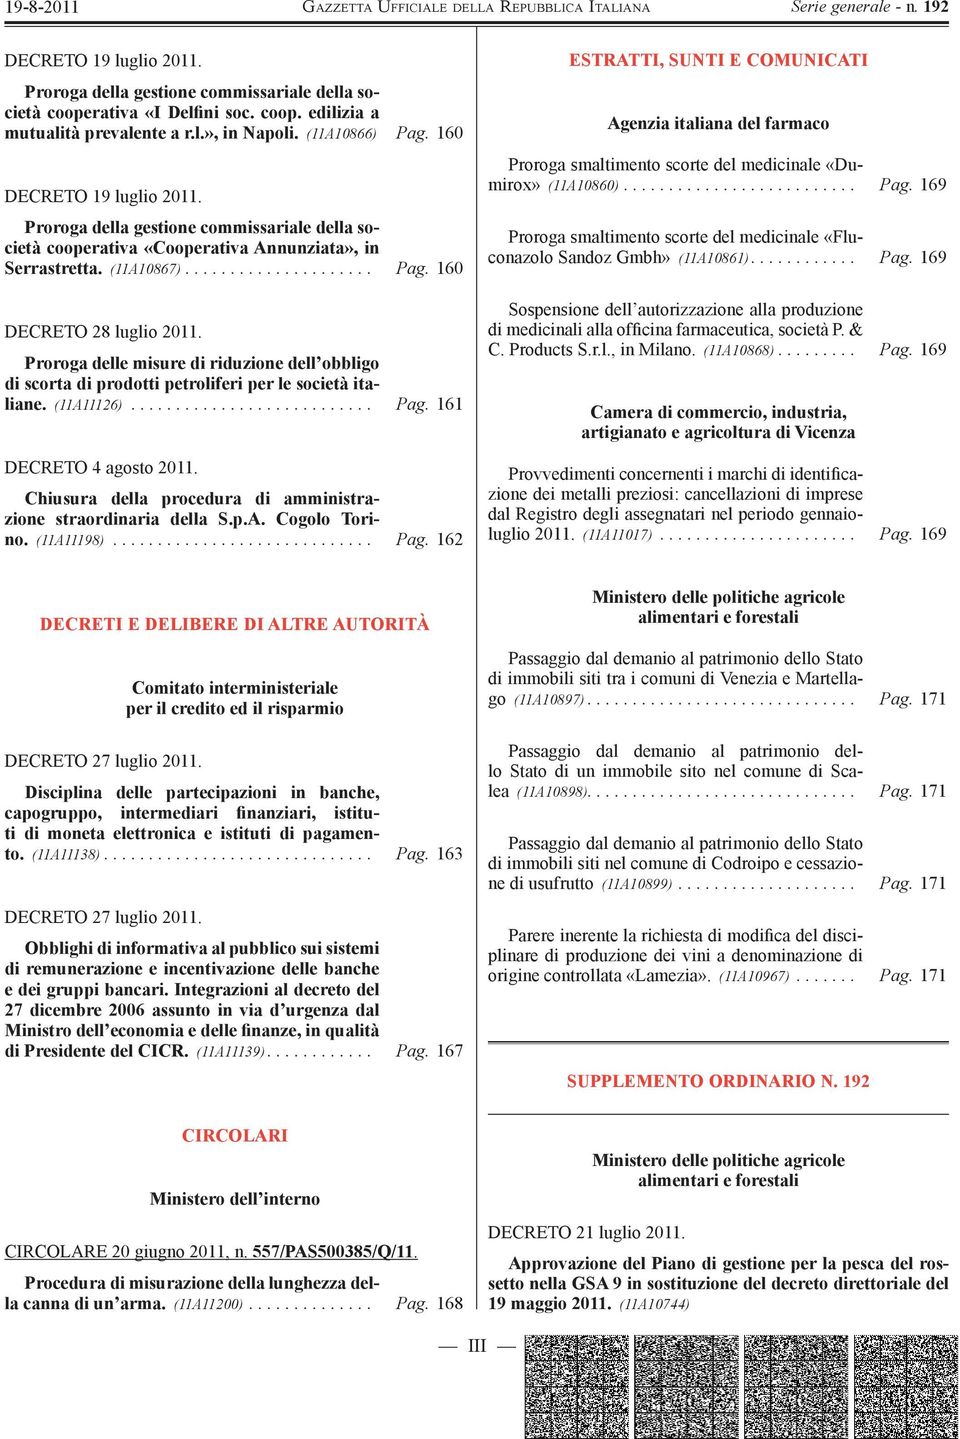 Proroga delle misure di riduzione dell obbligo di scorta di prodotti petroliferi per le società italiane. (11A11126)........................... Pag. 161 DECRETO 4 agosto 2011.